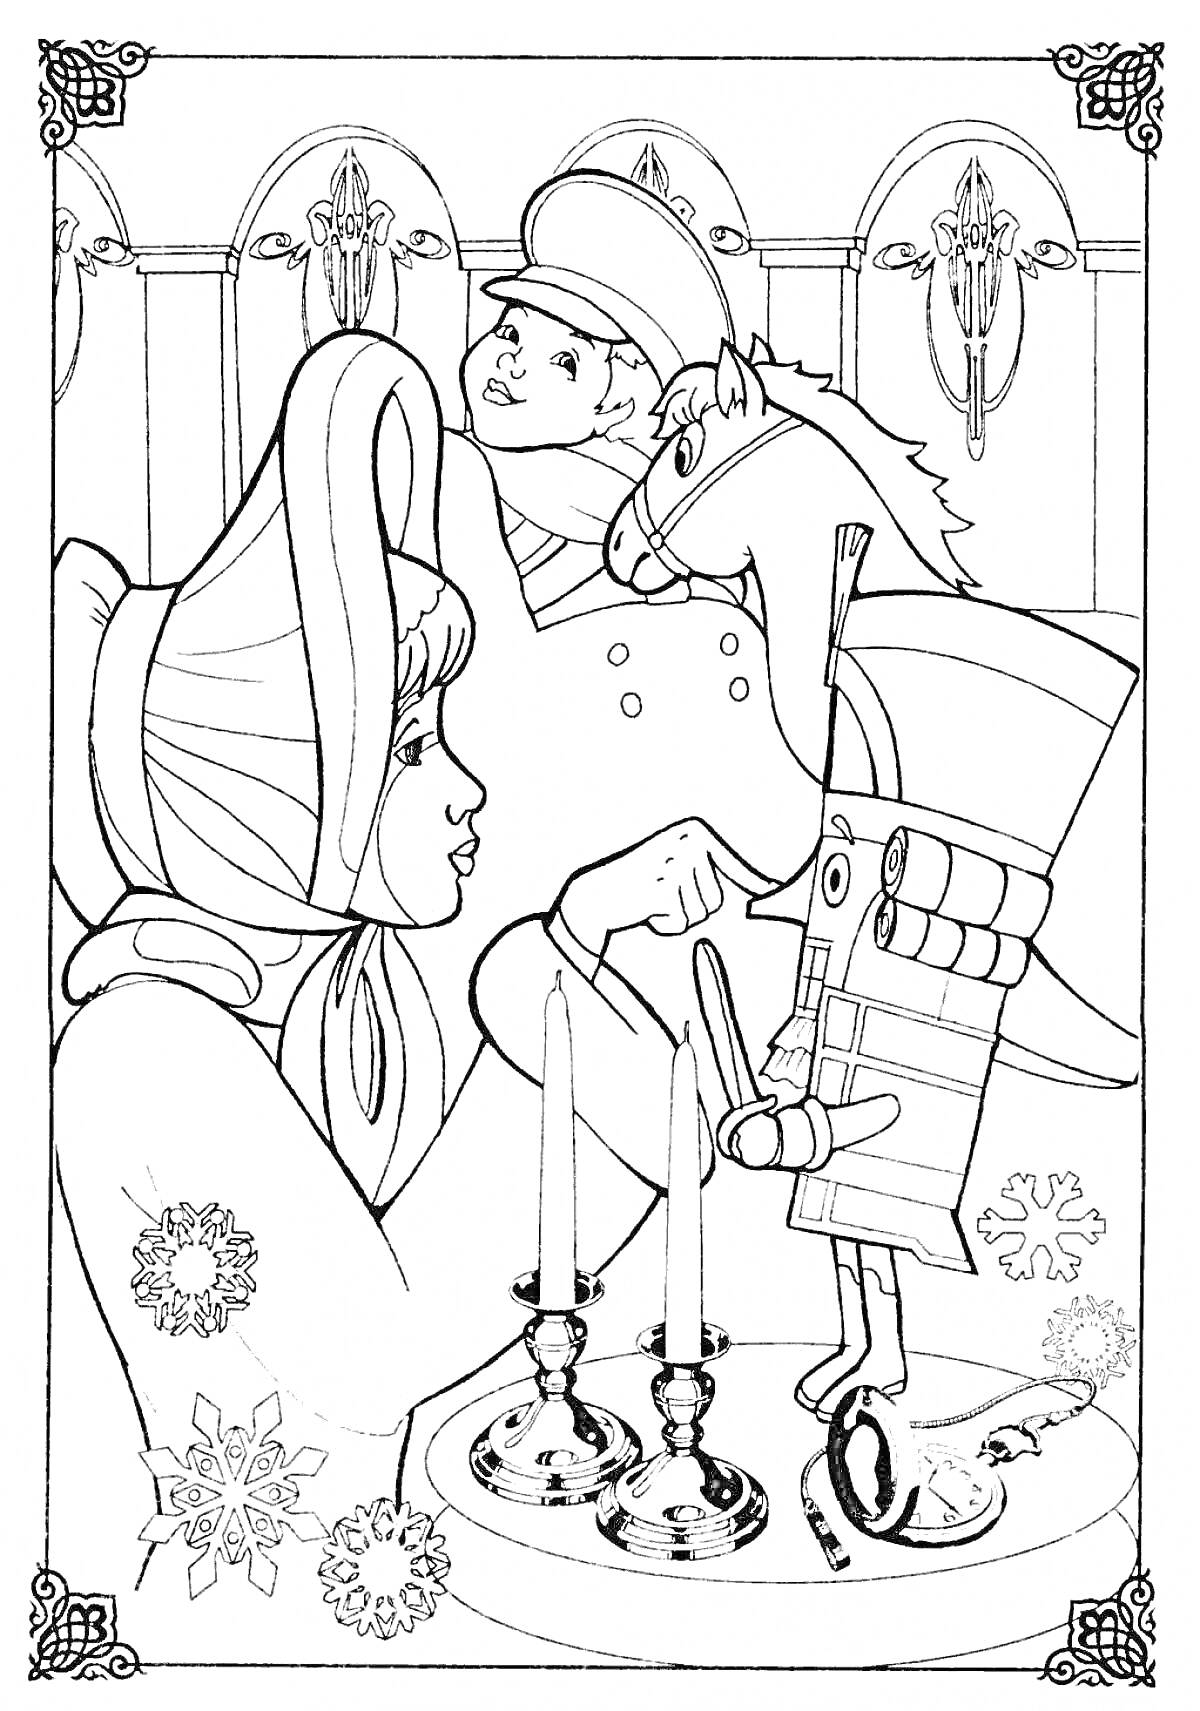 Раскраска Девочка с капюшоном и Щелкунчик на коне возле подсвечников на фоне новогодних снежинок и лепнины